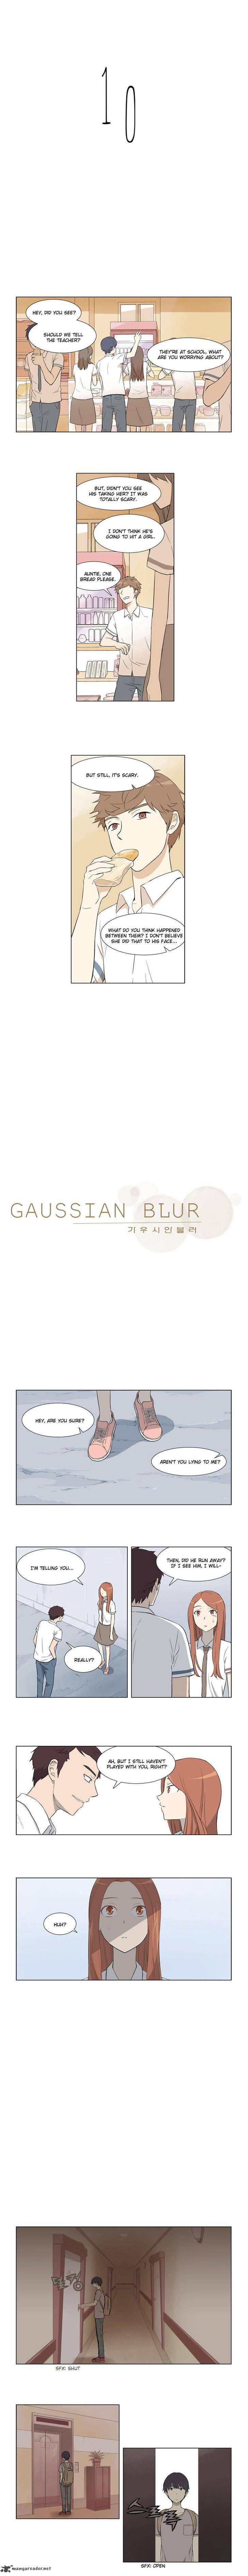 Gaussian Blur 10 2